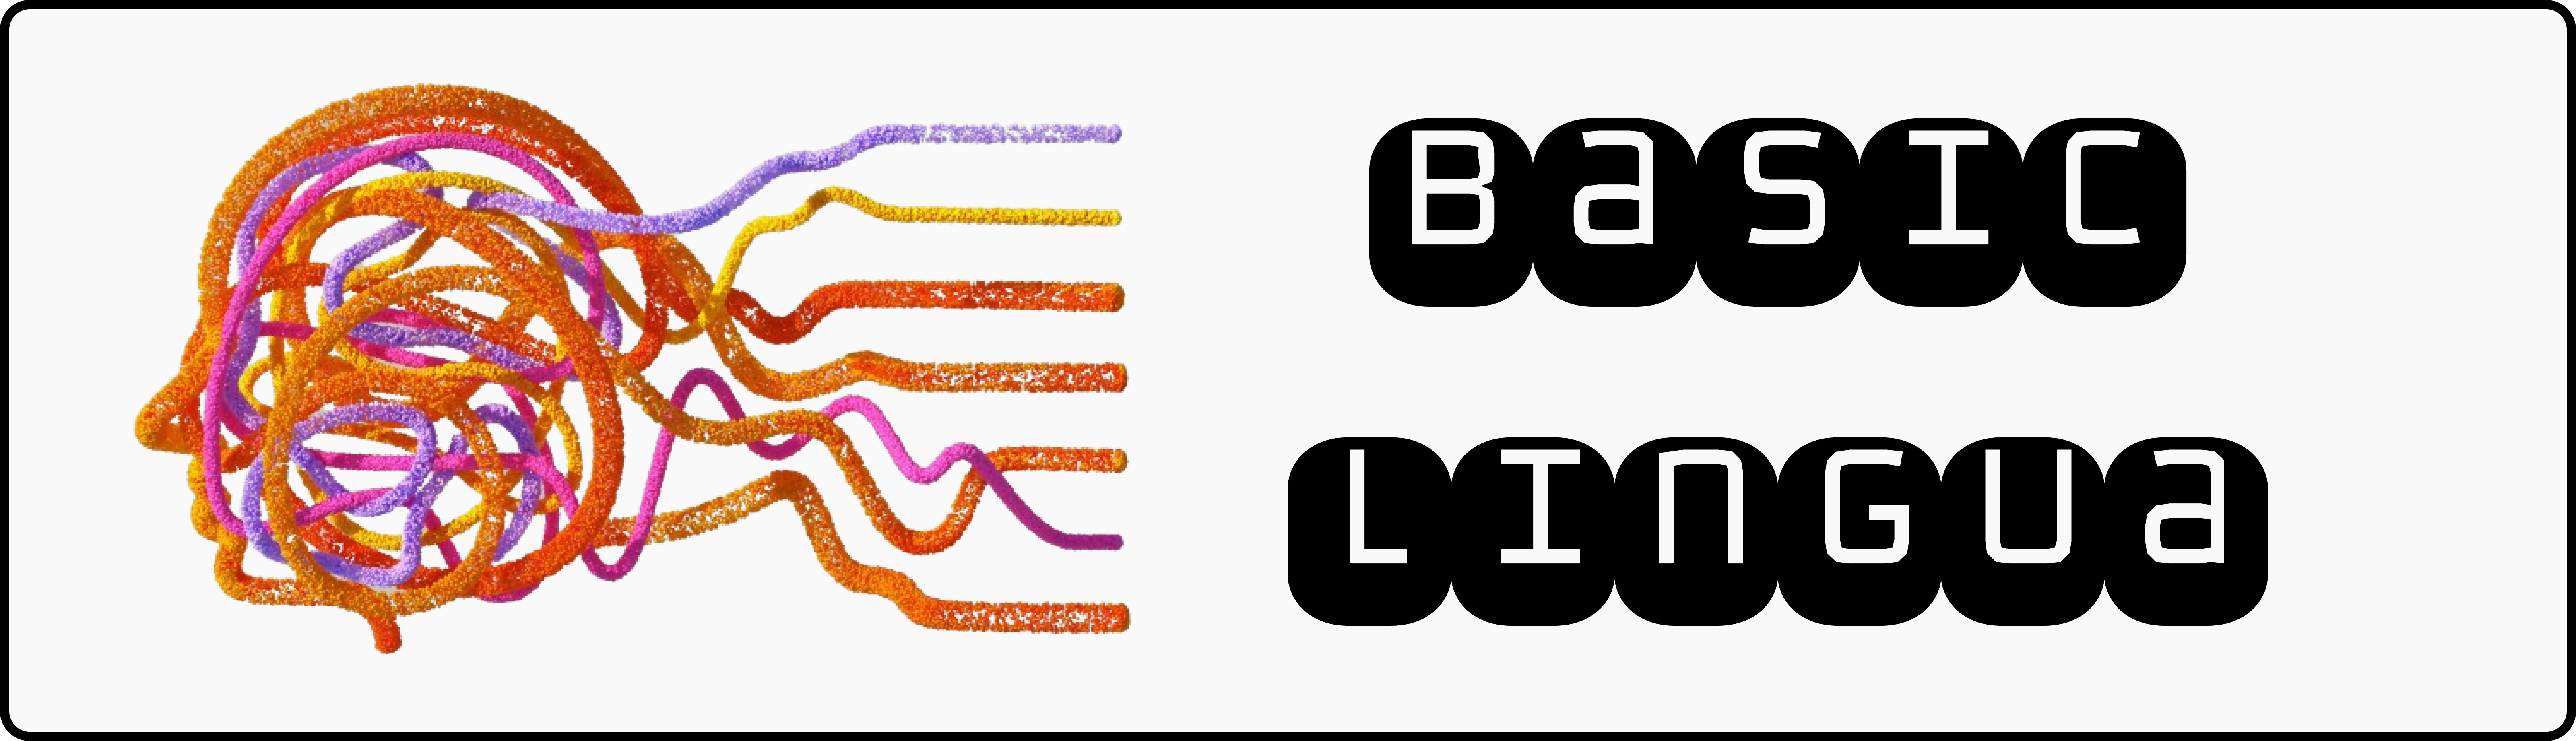 Basic-Lingua Logo